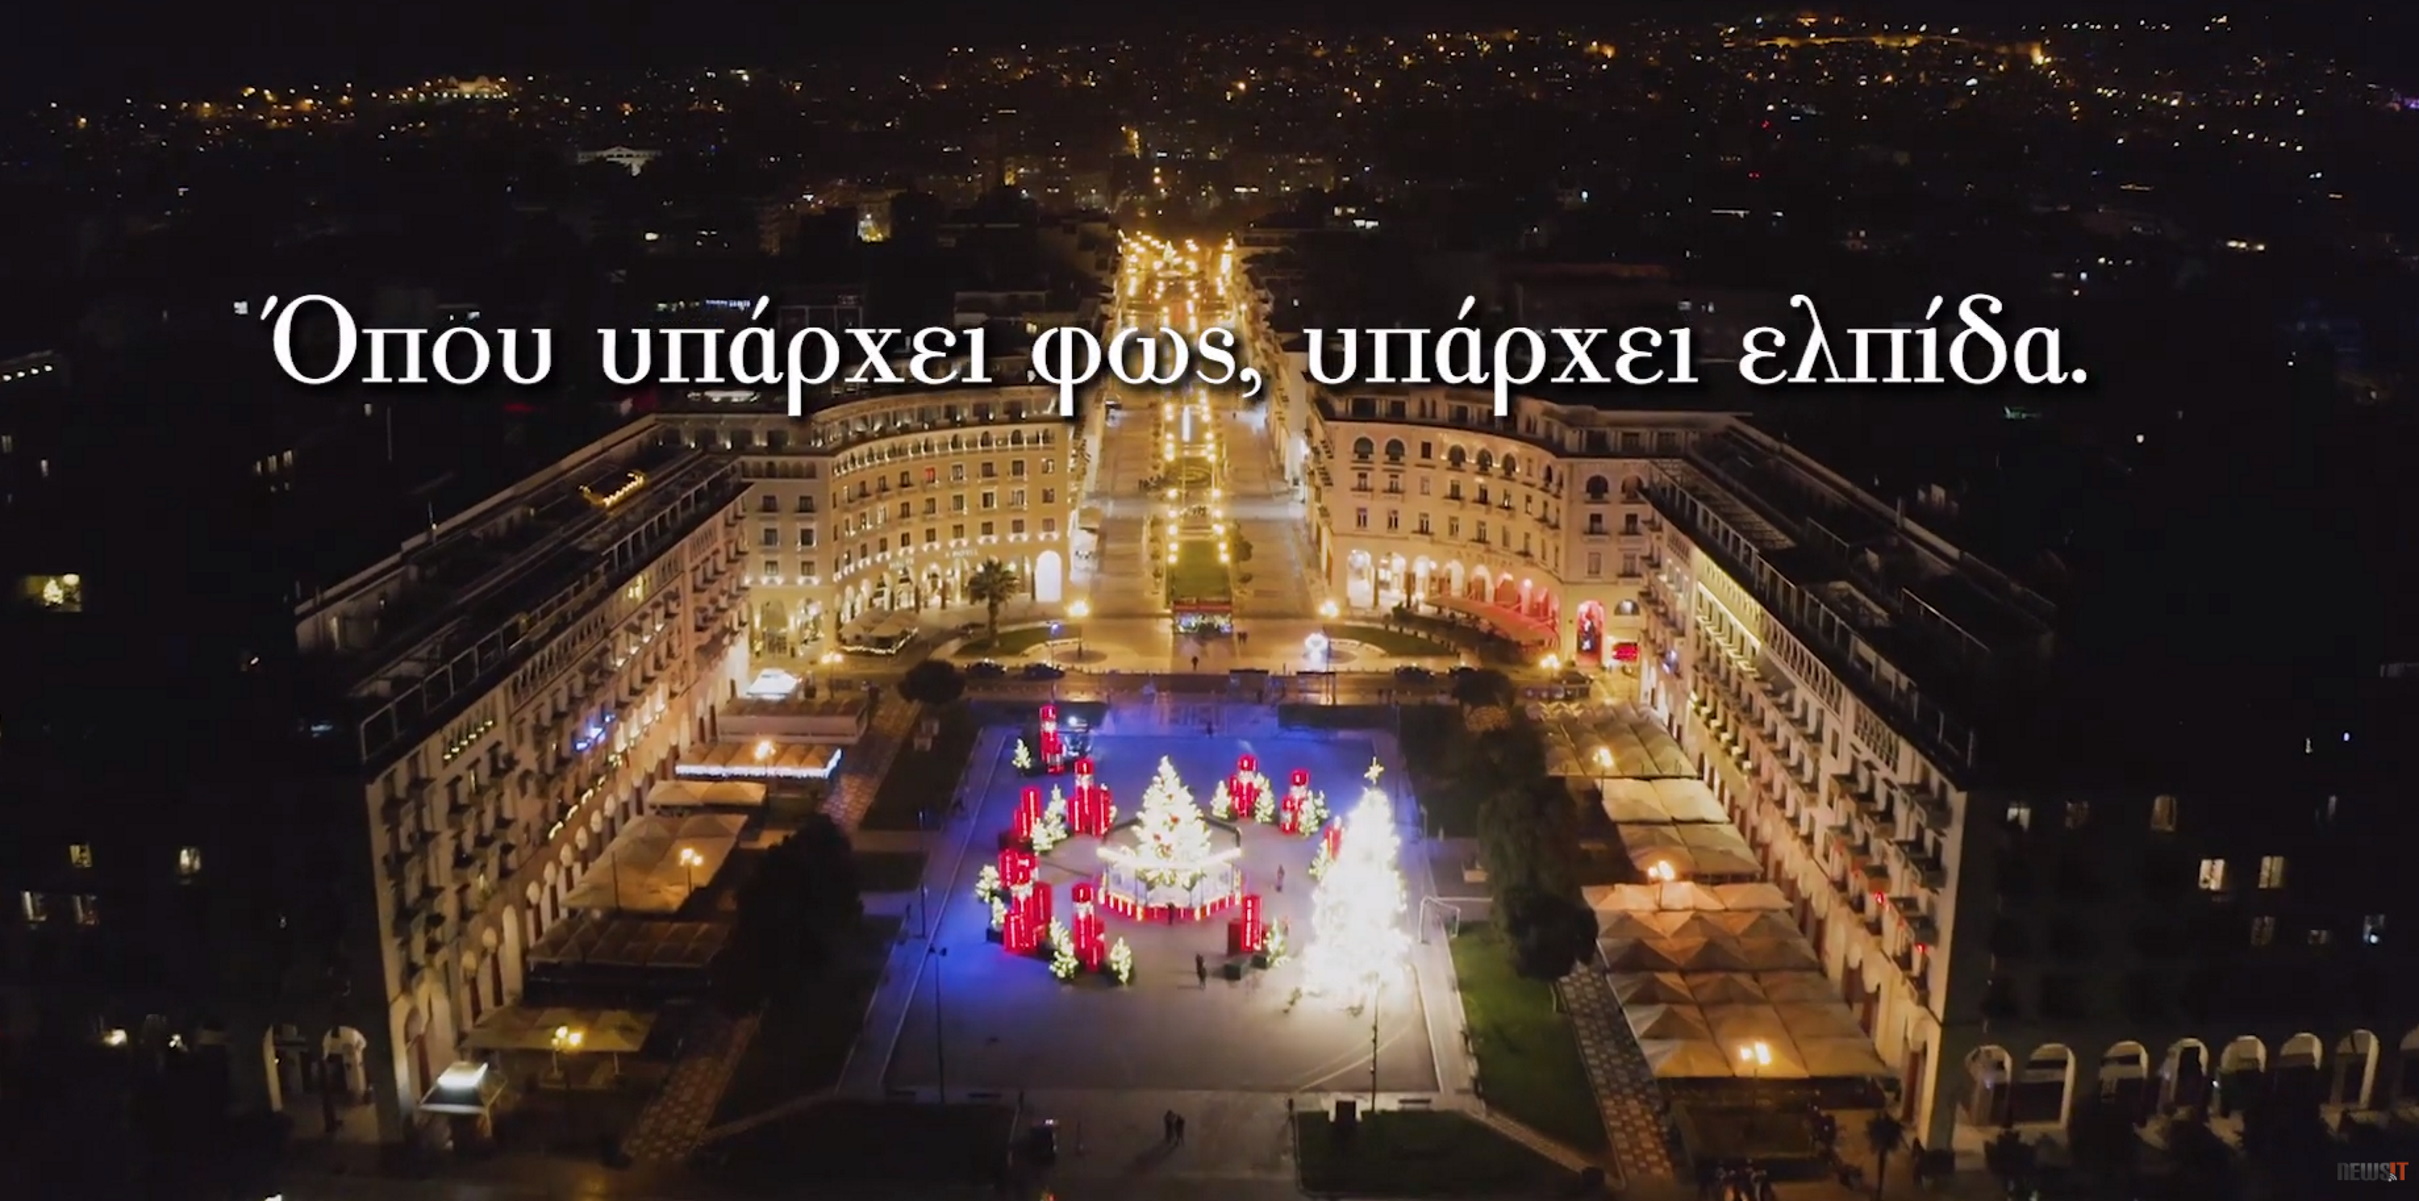 Θεσσαλονίκη: Παραμυθένιος στολισμός – Η μαγεία των Χριστουγέννων σε ένα πανέμορφο βίντεο